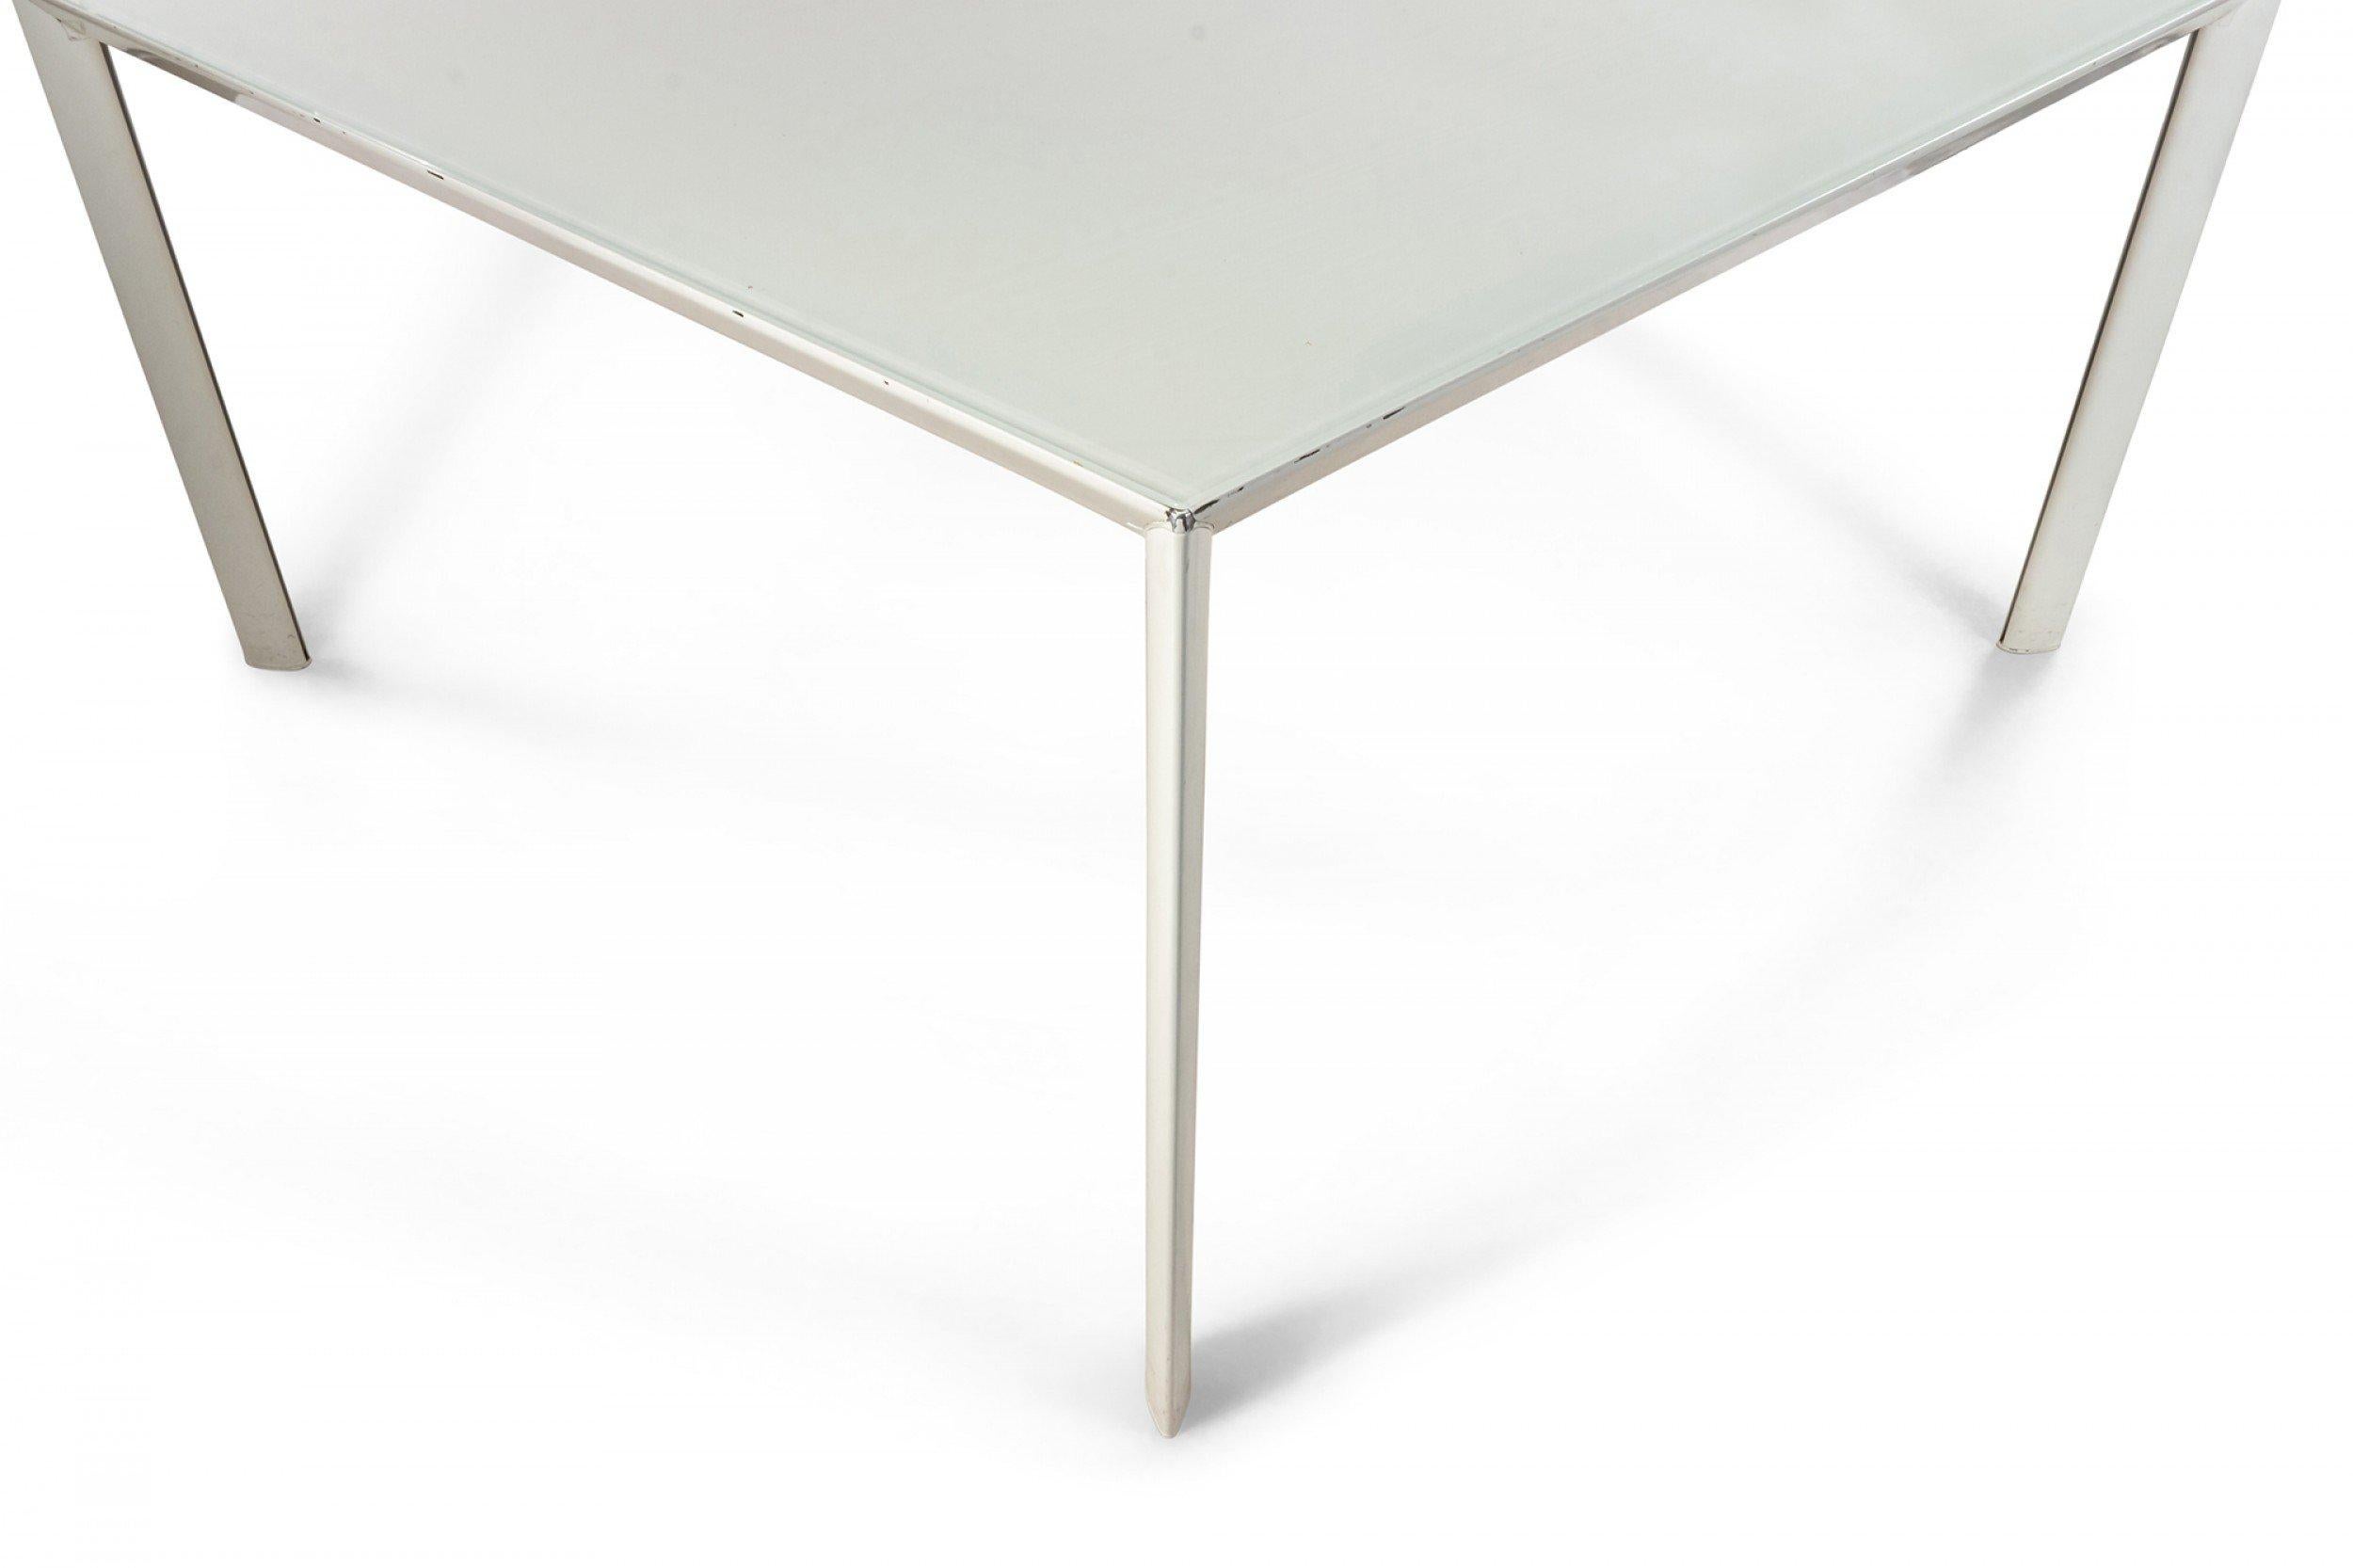 2 Grandes tables de travail carrées contemporaines en verre blanc avec pieds en métal blanc (PORRO)(prix unitaire).